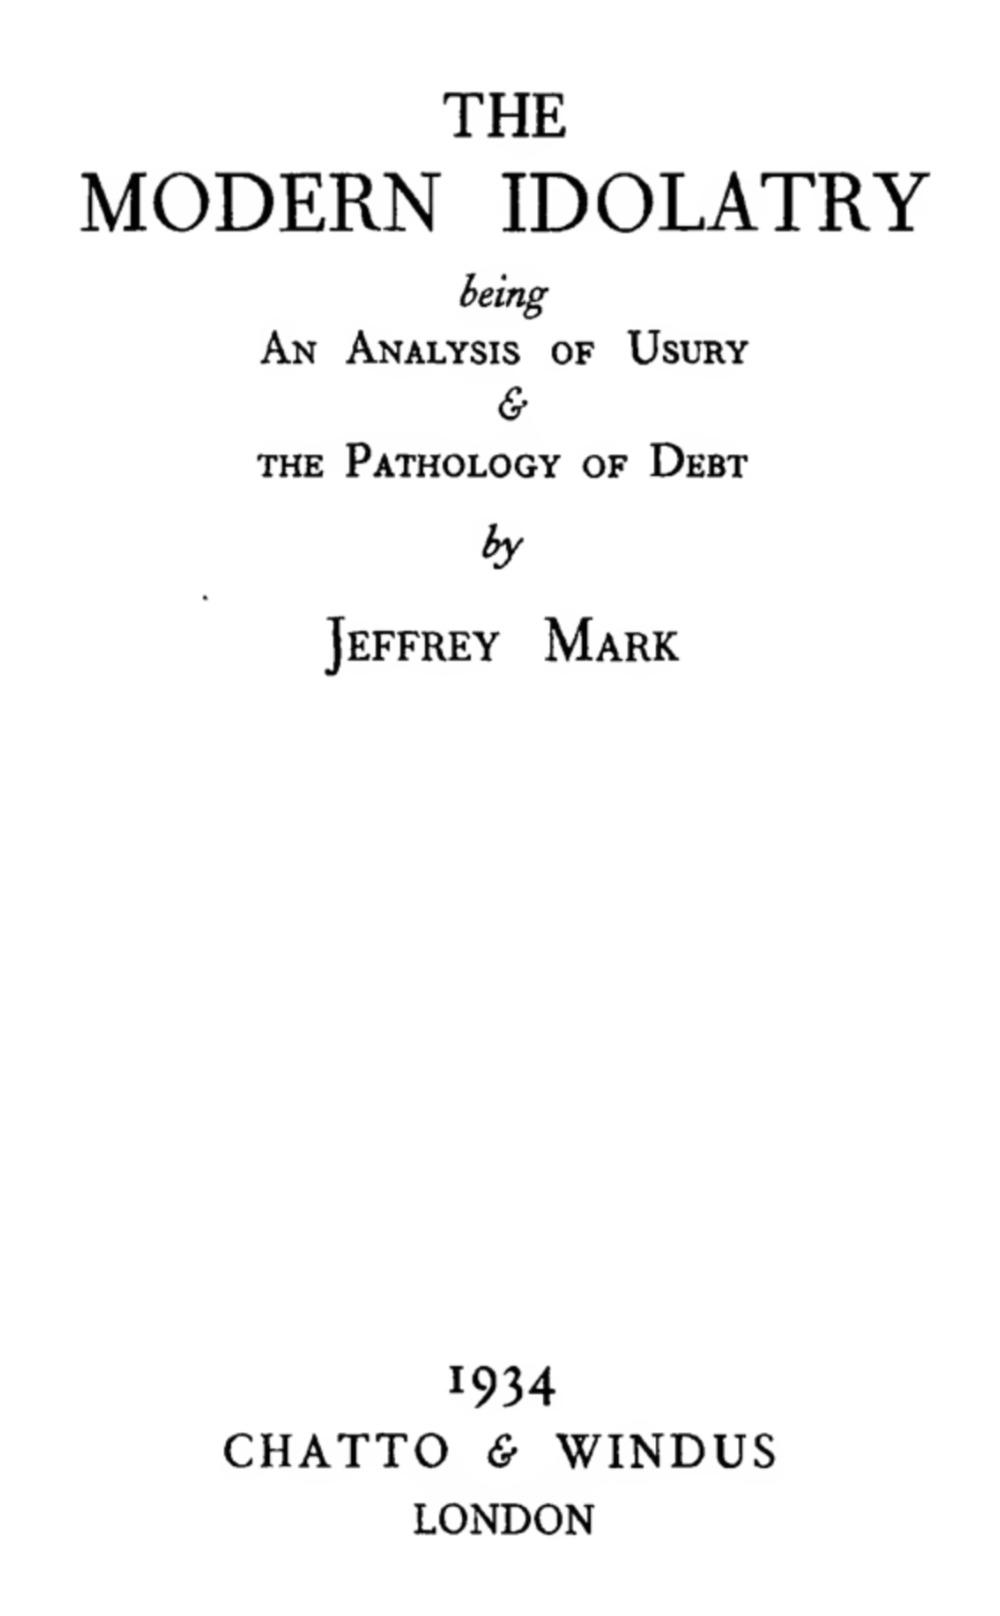 The Modern Idolatry (1934) by Mark Jeffrey